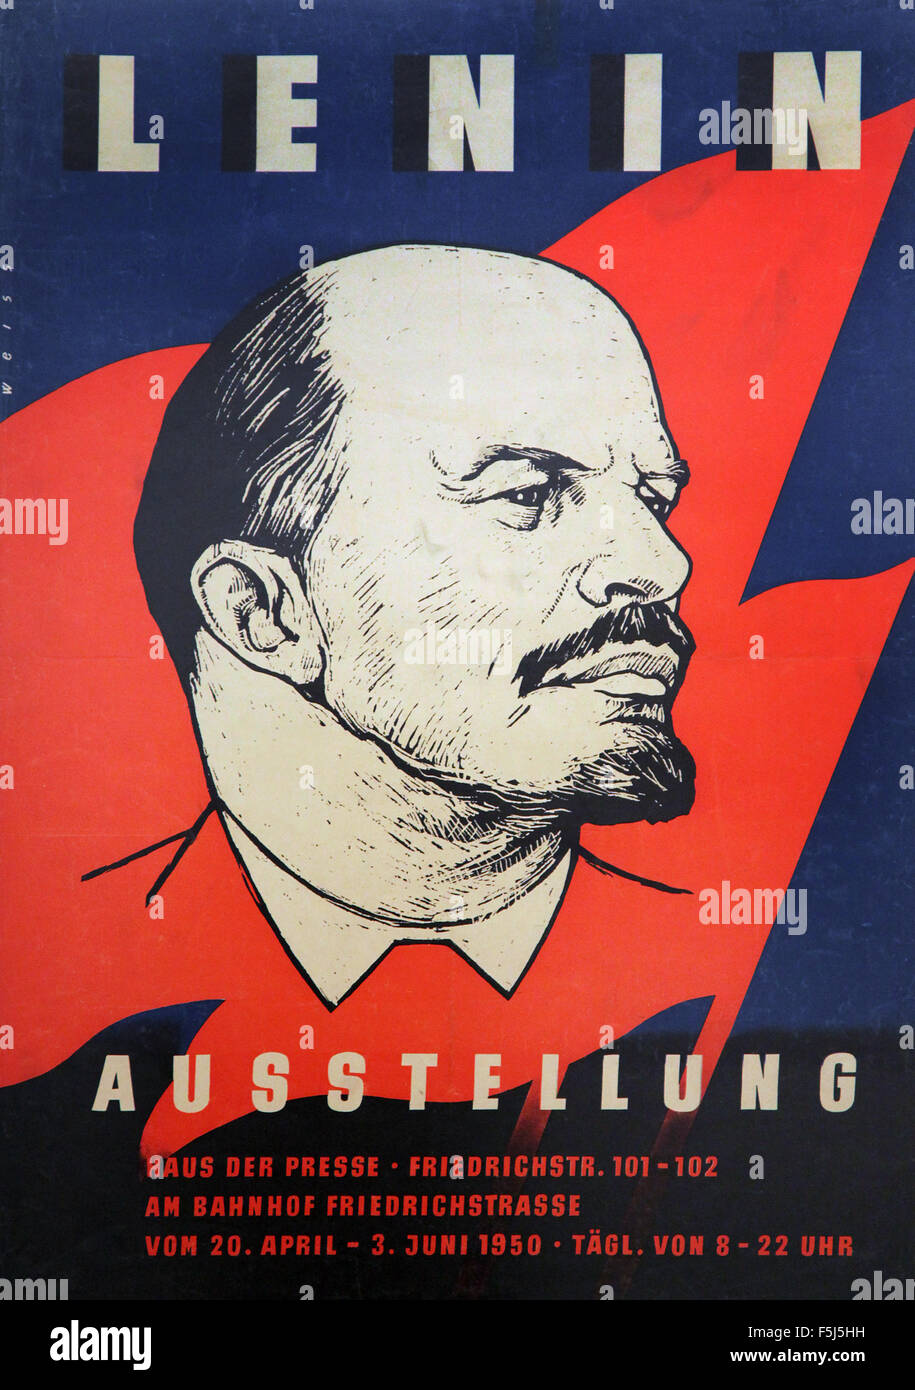 Vladimir Lenin poster art print Stock Photo